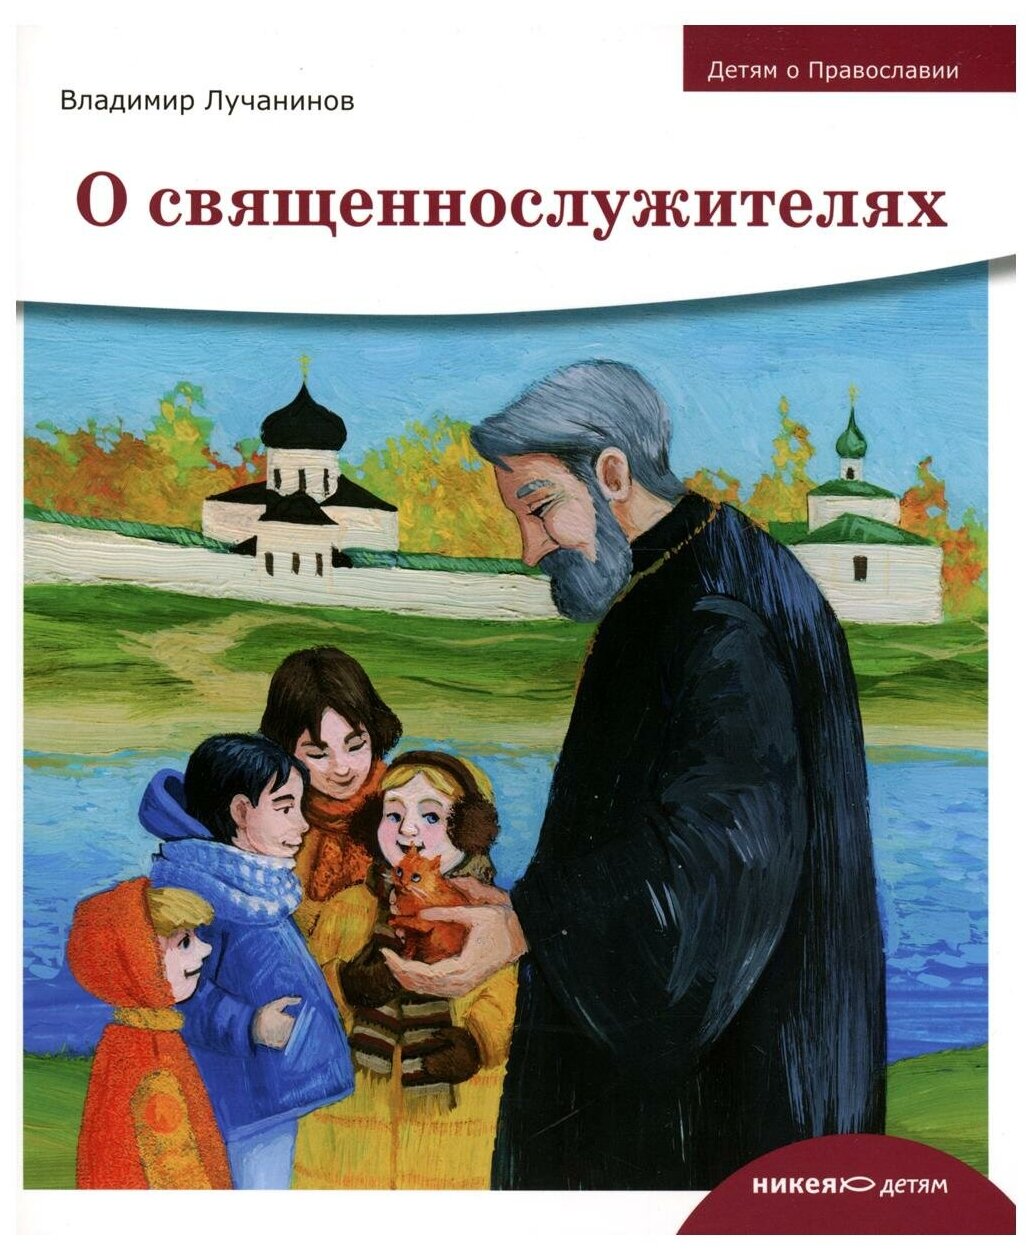 Книга Детям о Православии. О священнослужителях - фото №1